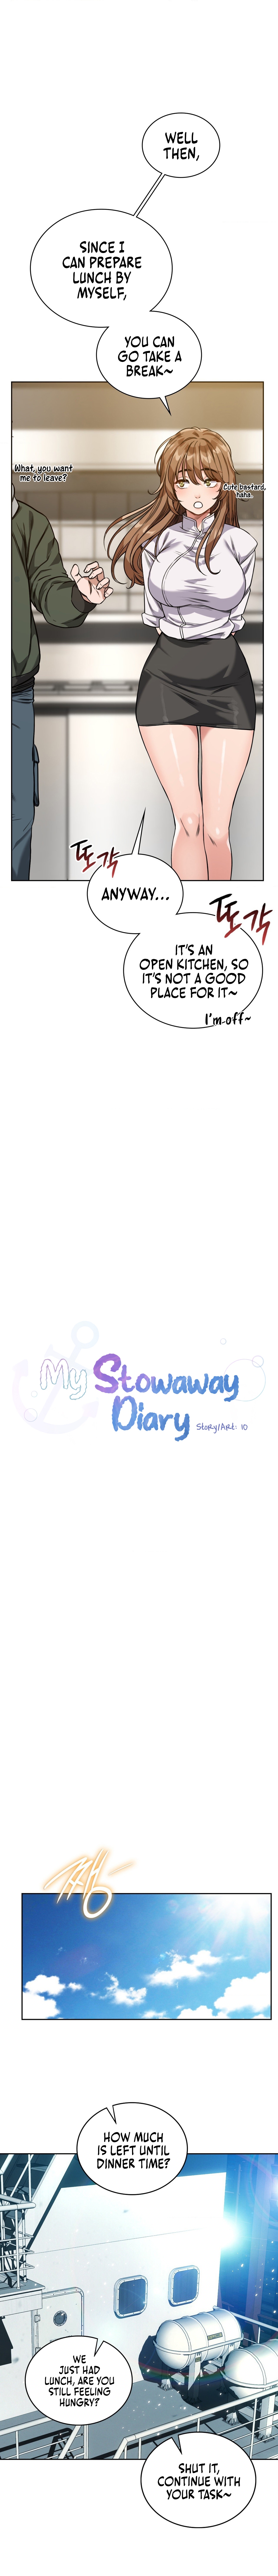 Read manhwa My Stowaway Diary  Chapter 3 - SauceManhwa.com